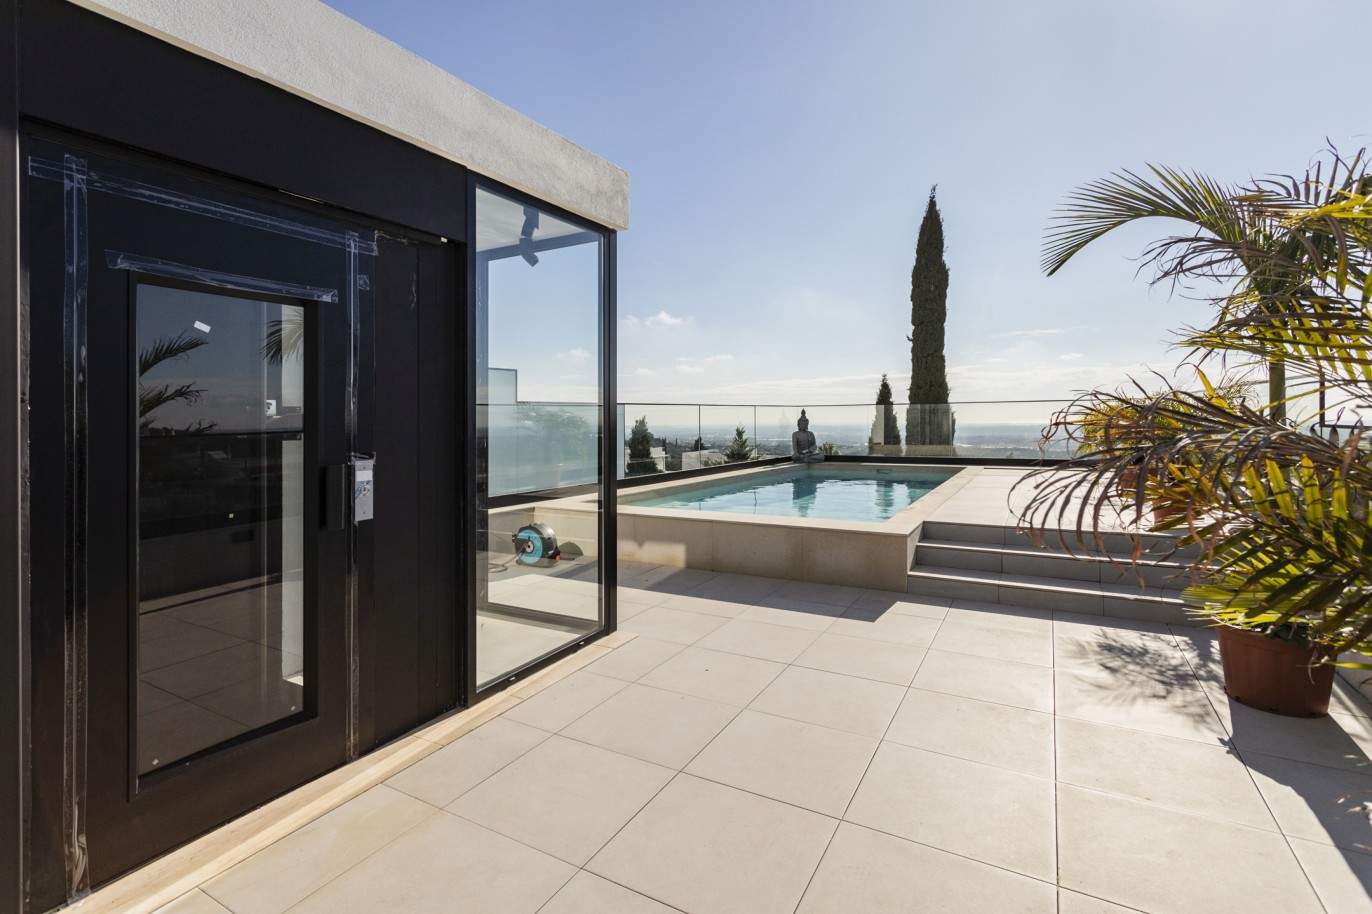 Villa de 3 dormitorios, con piscina, en venta en Santa Barbara de Nexe, Algarve_213419